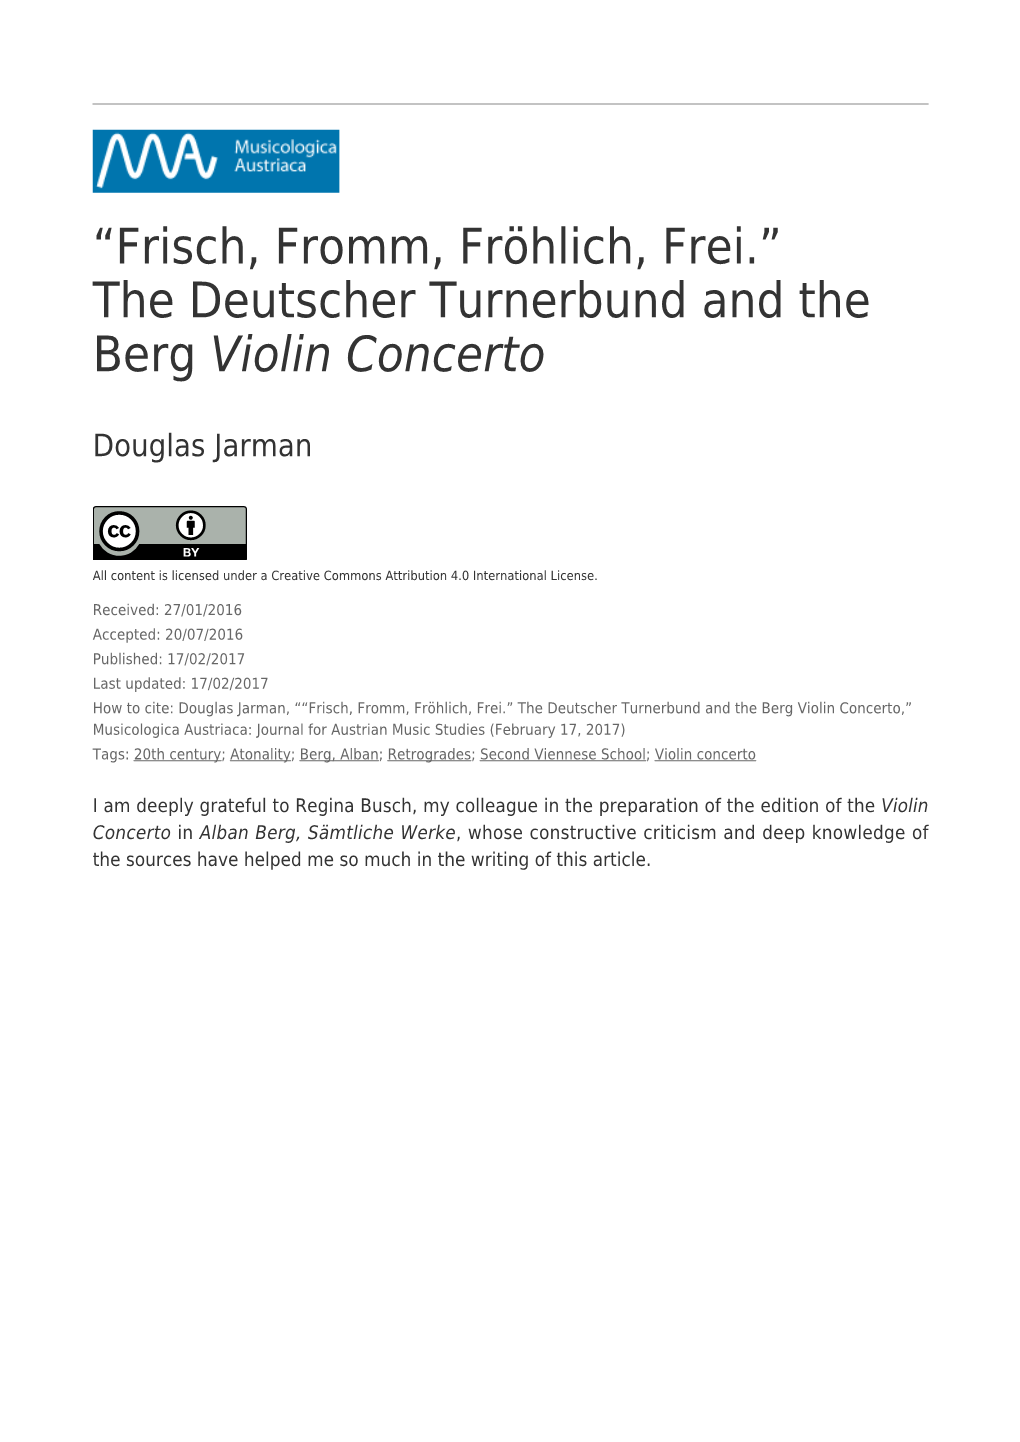 The Deutscher Turnerbund and the Berg Violin Concerto